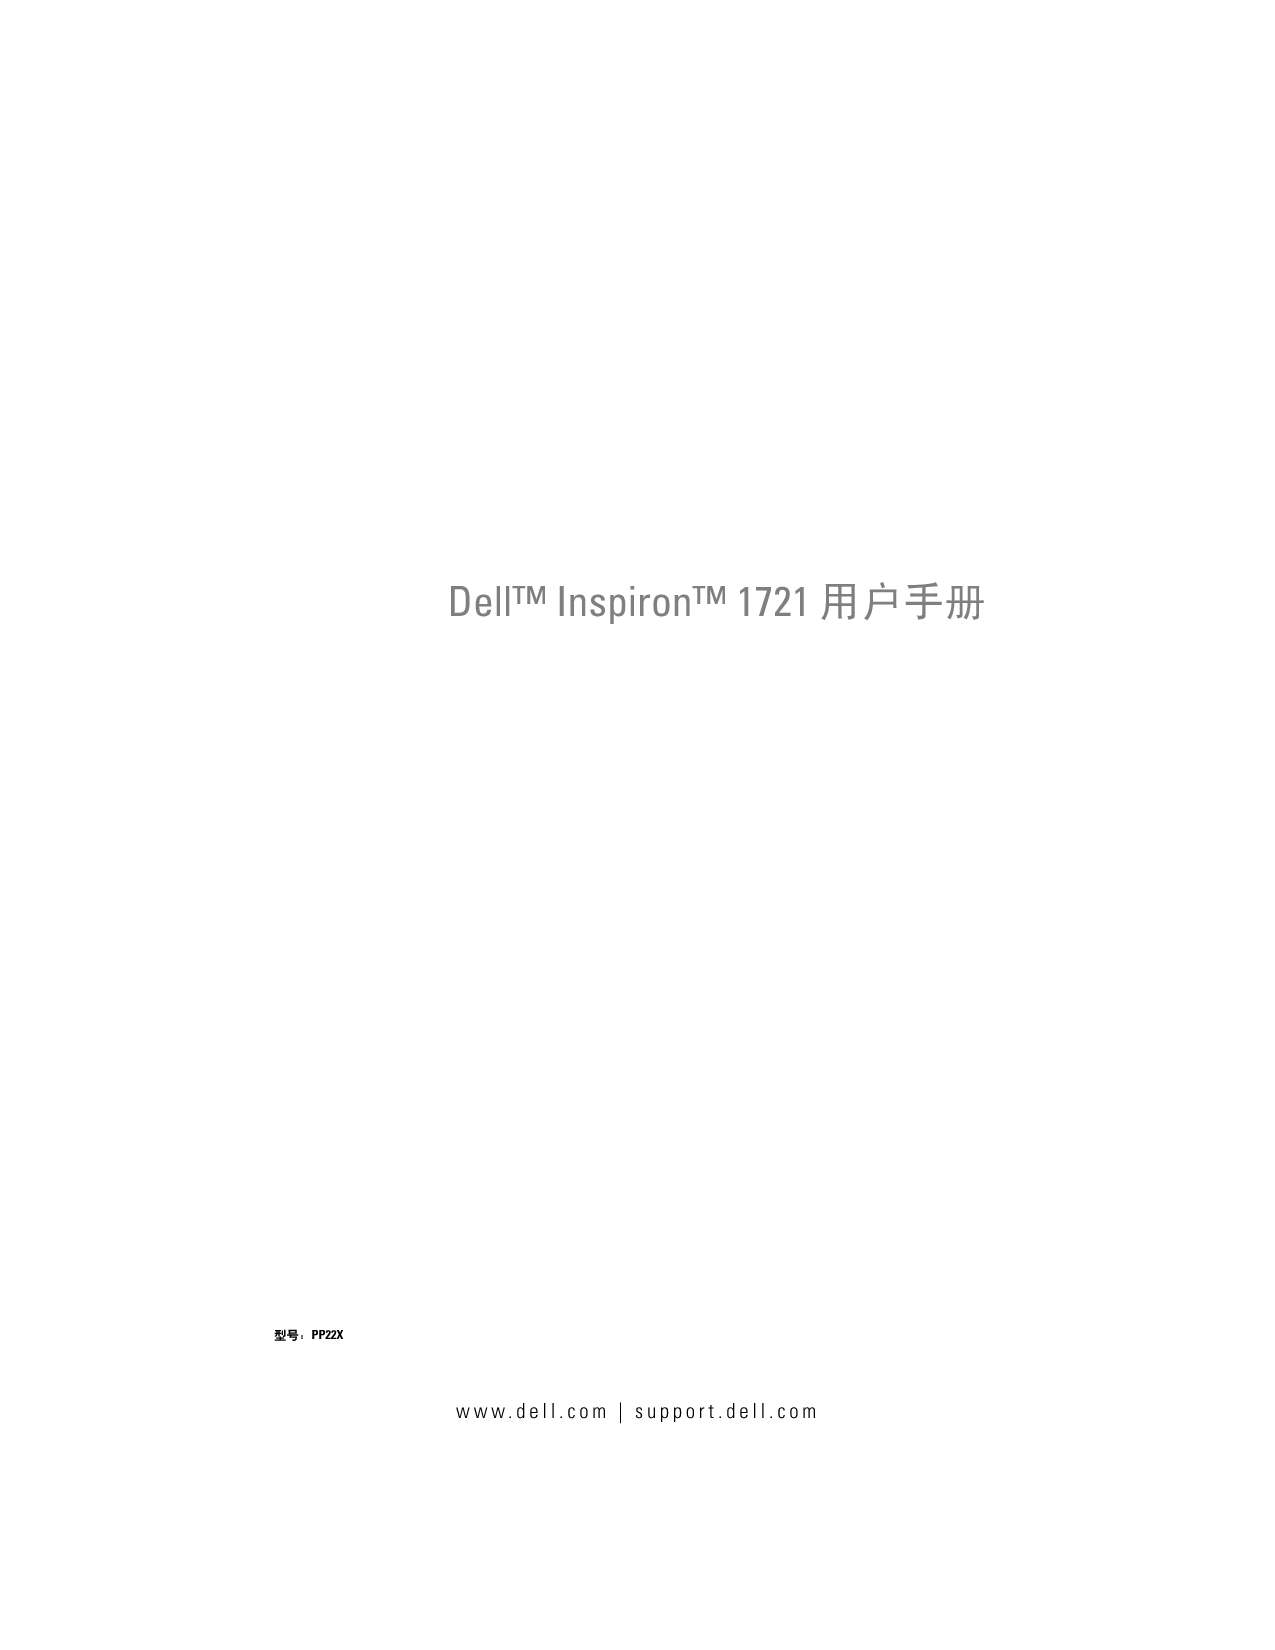 戴尔 Dell Inspiron 1721 用户手册 封面